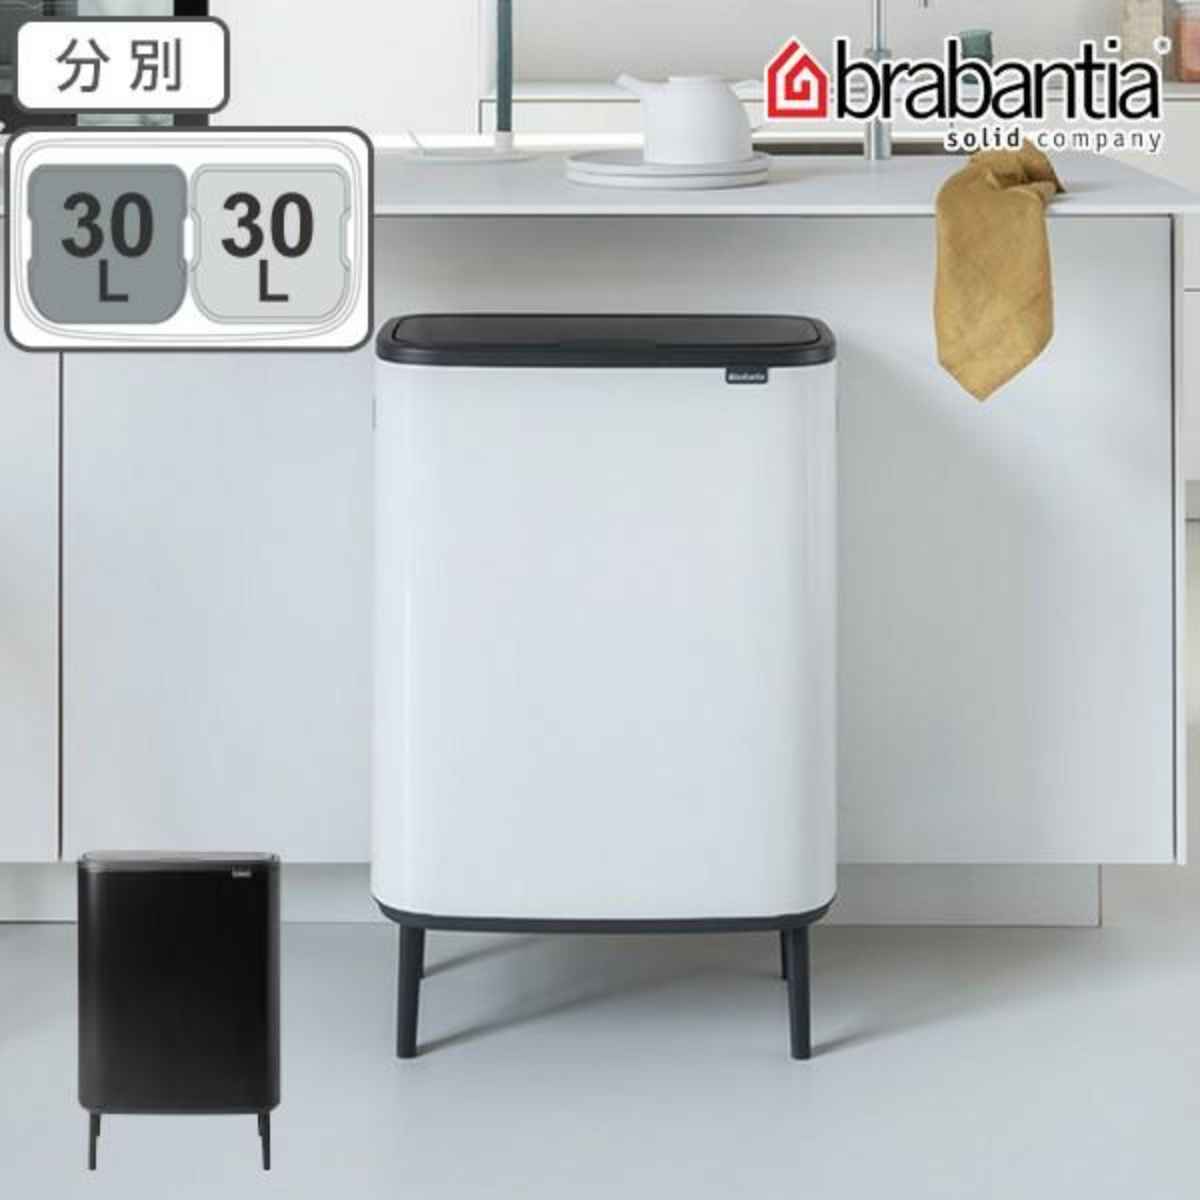 brabantia ブラバンシア ゴミ箱 BO タッチビン HI 60L ミネラル